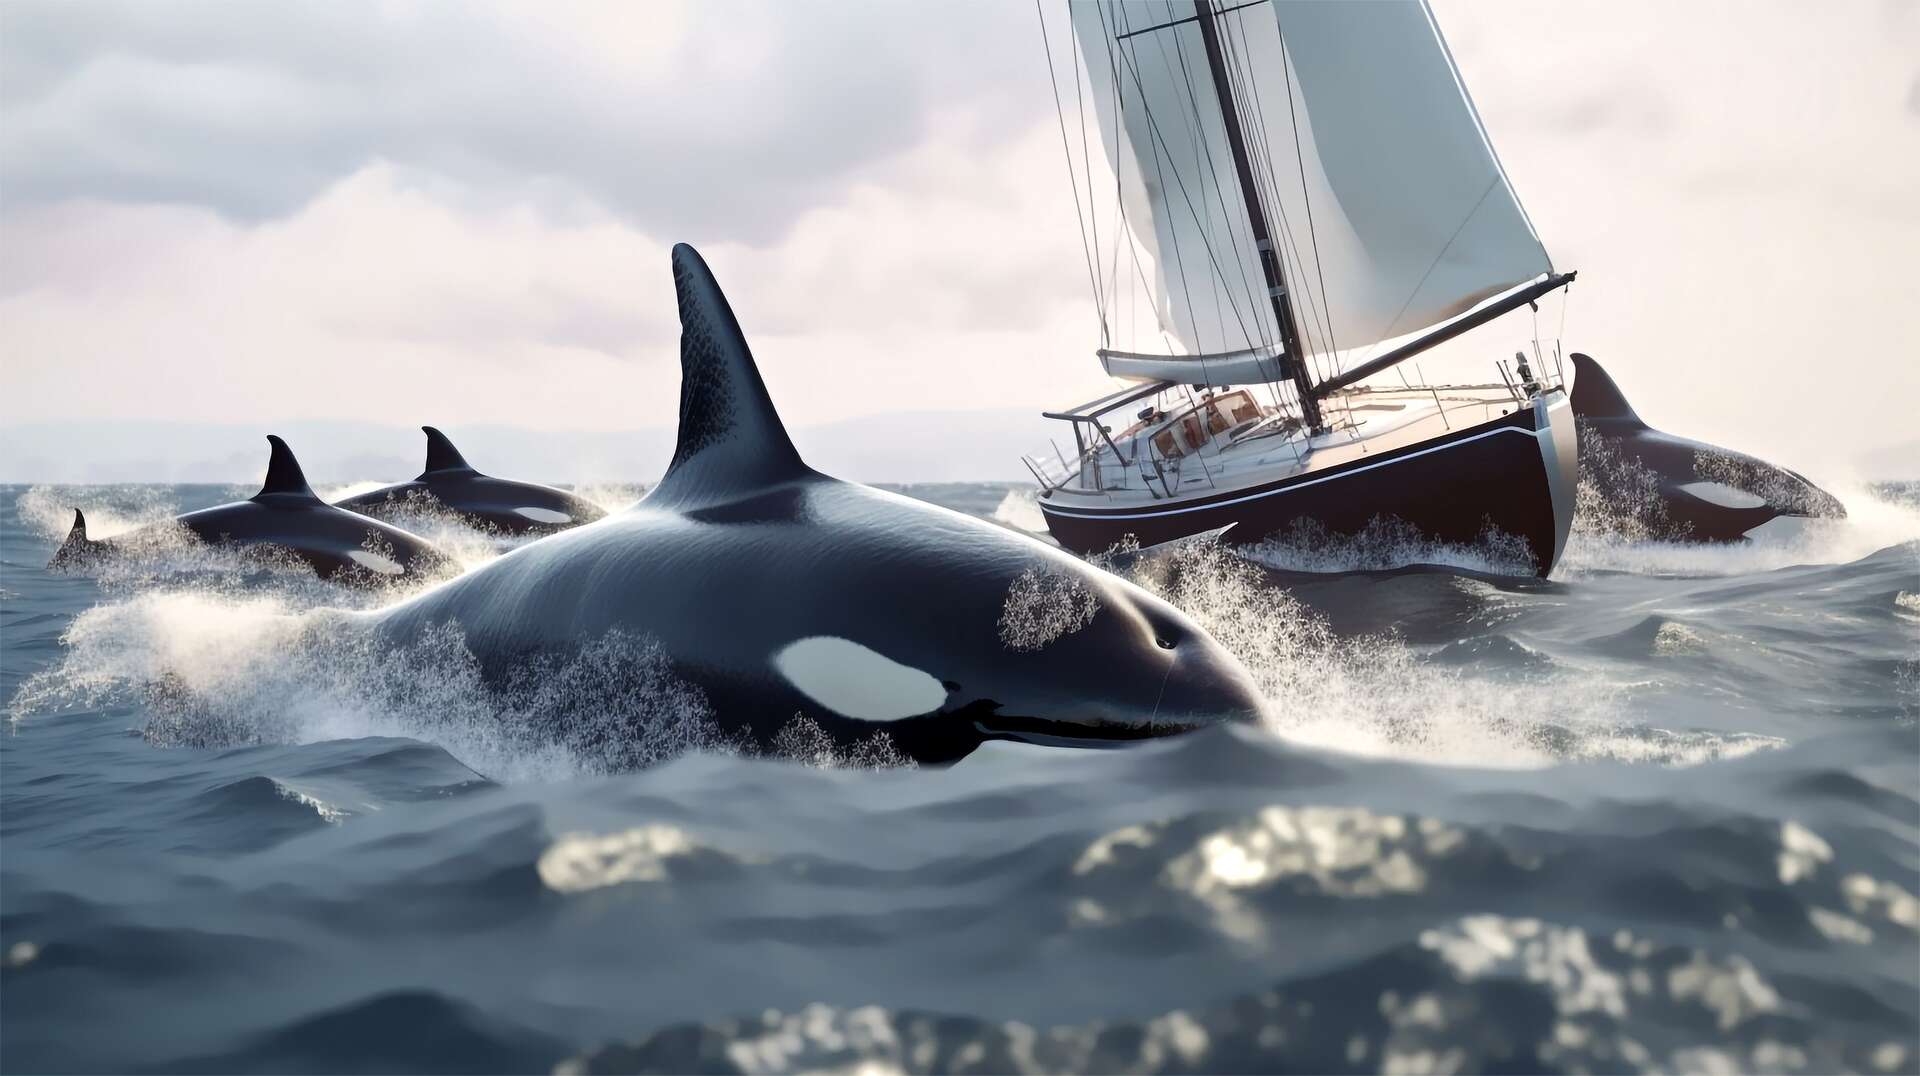 Attaques d'orques contre des bateaux : est-ce un jeu ou une vengeance calculée ?